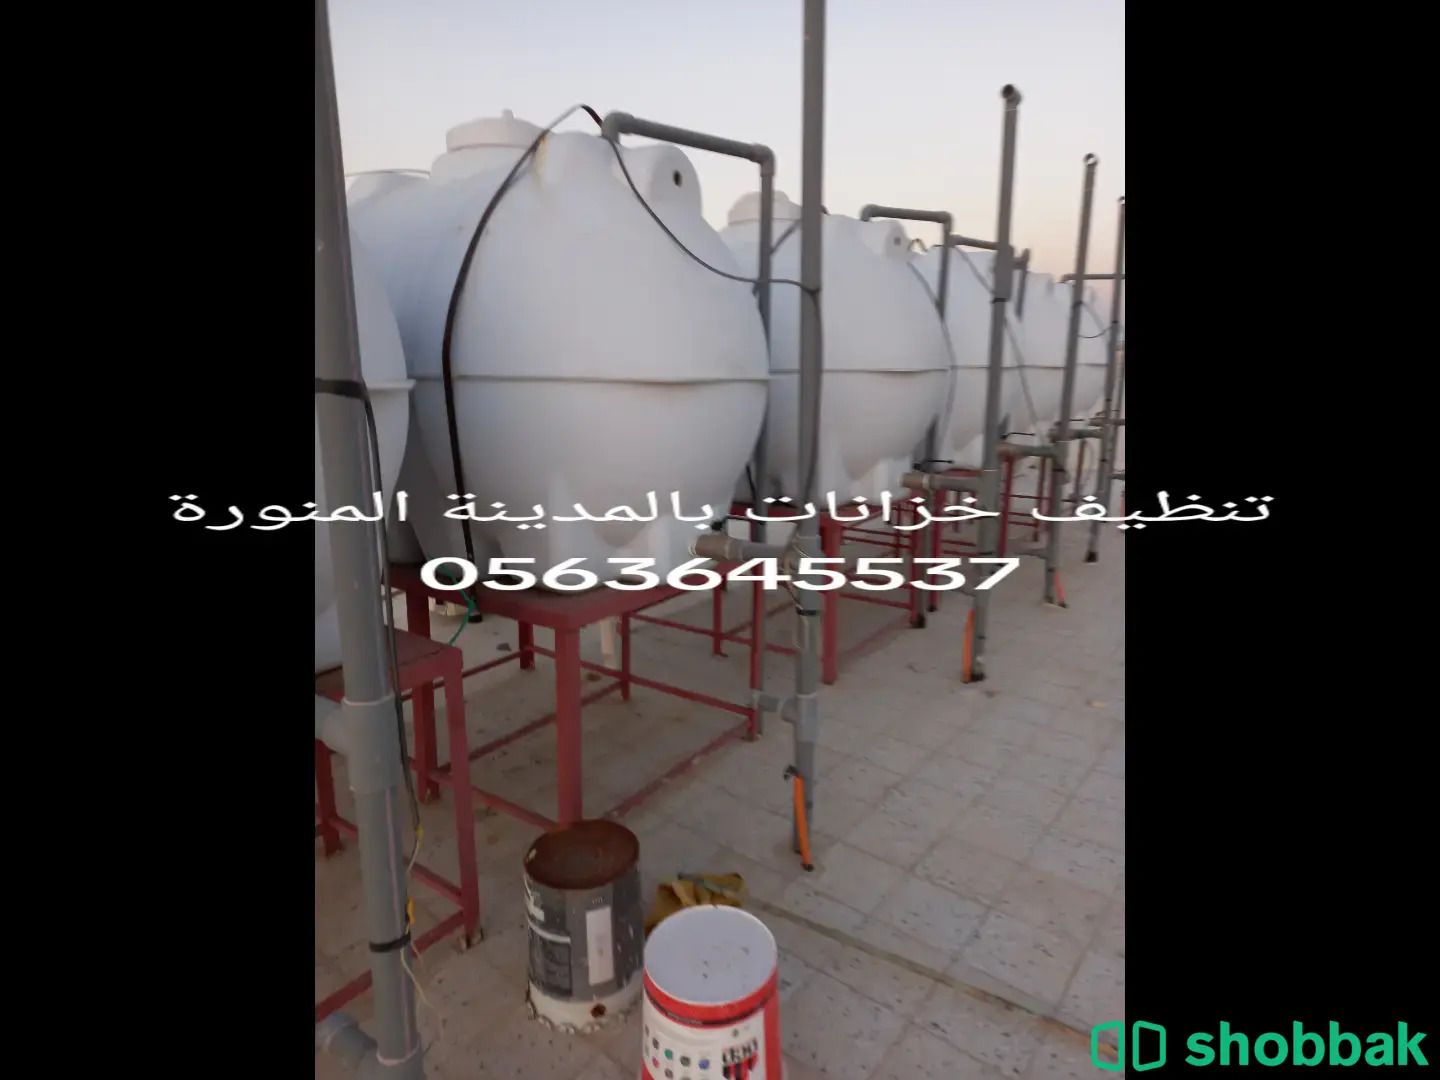 غسيل خزانات بالمدينة 0563645537 Shobbak Saudi Arabia